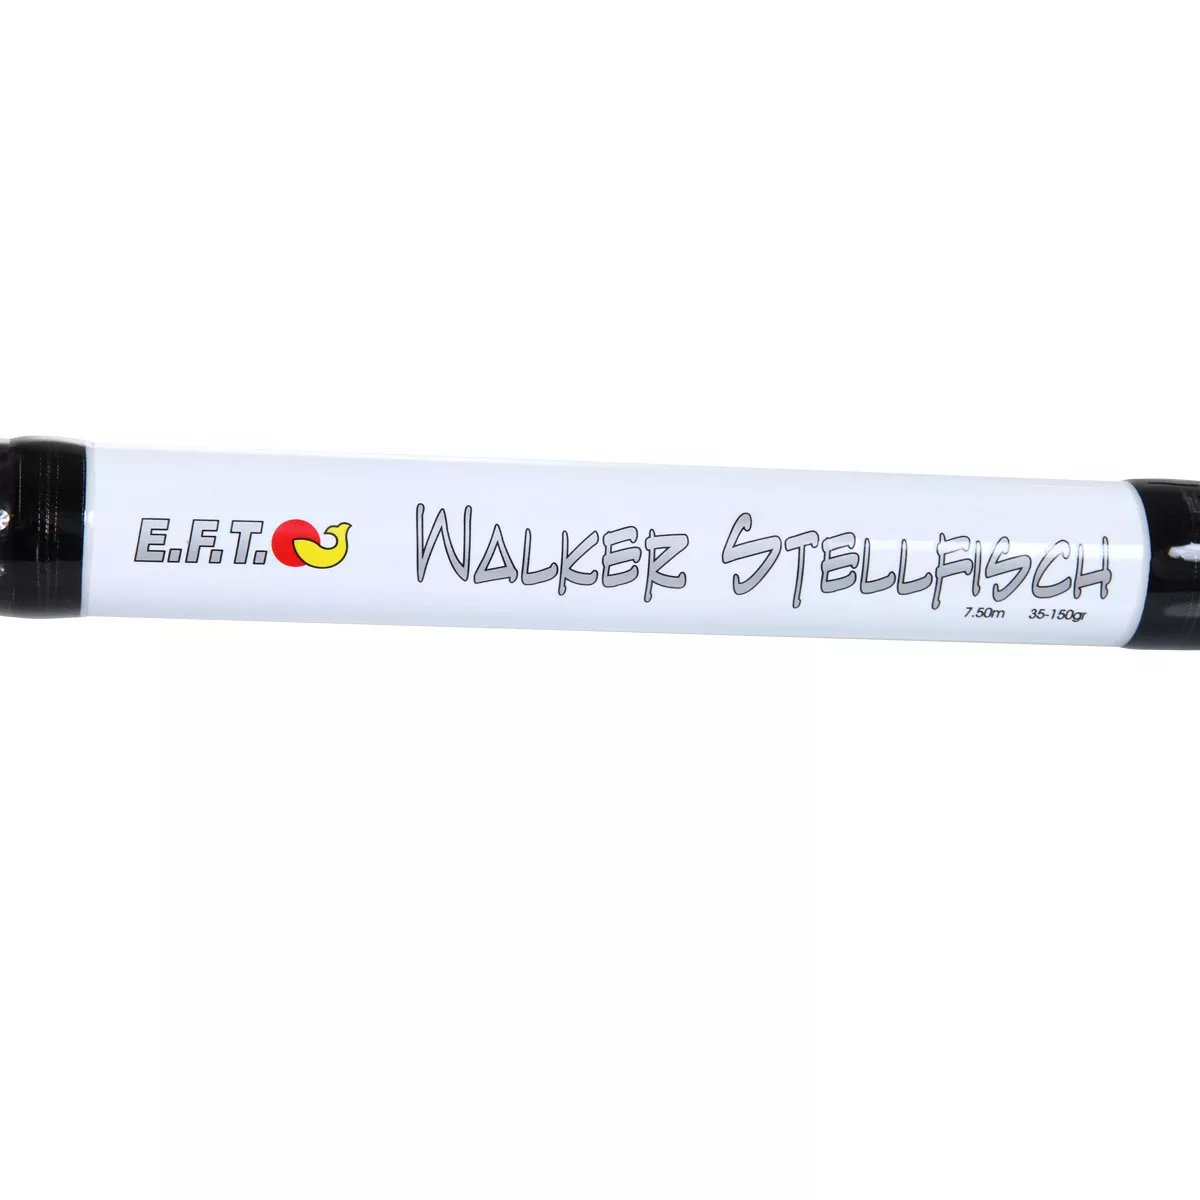 Walker Stellfisch 7.50m 35-150g